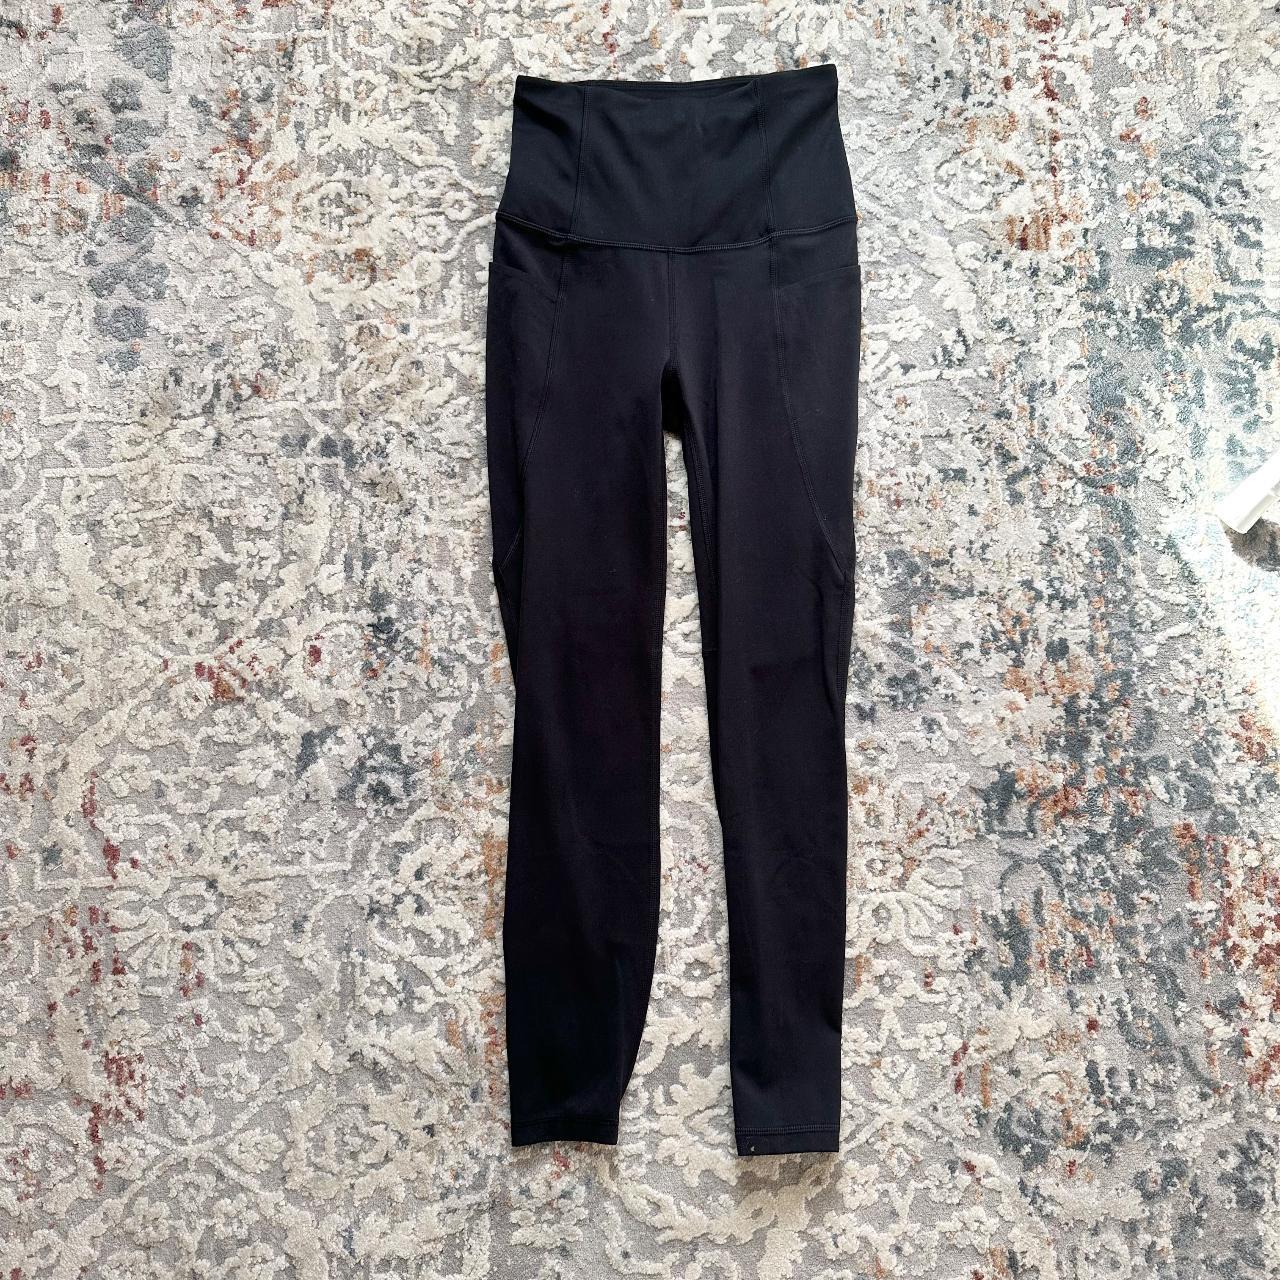 Pop Fit black leggings size large, pockets on the - Depop